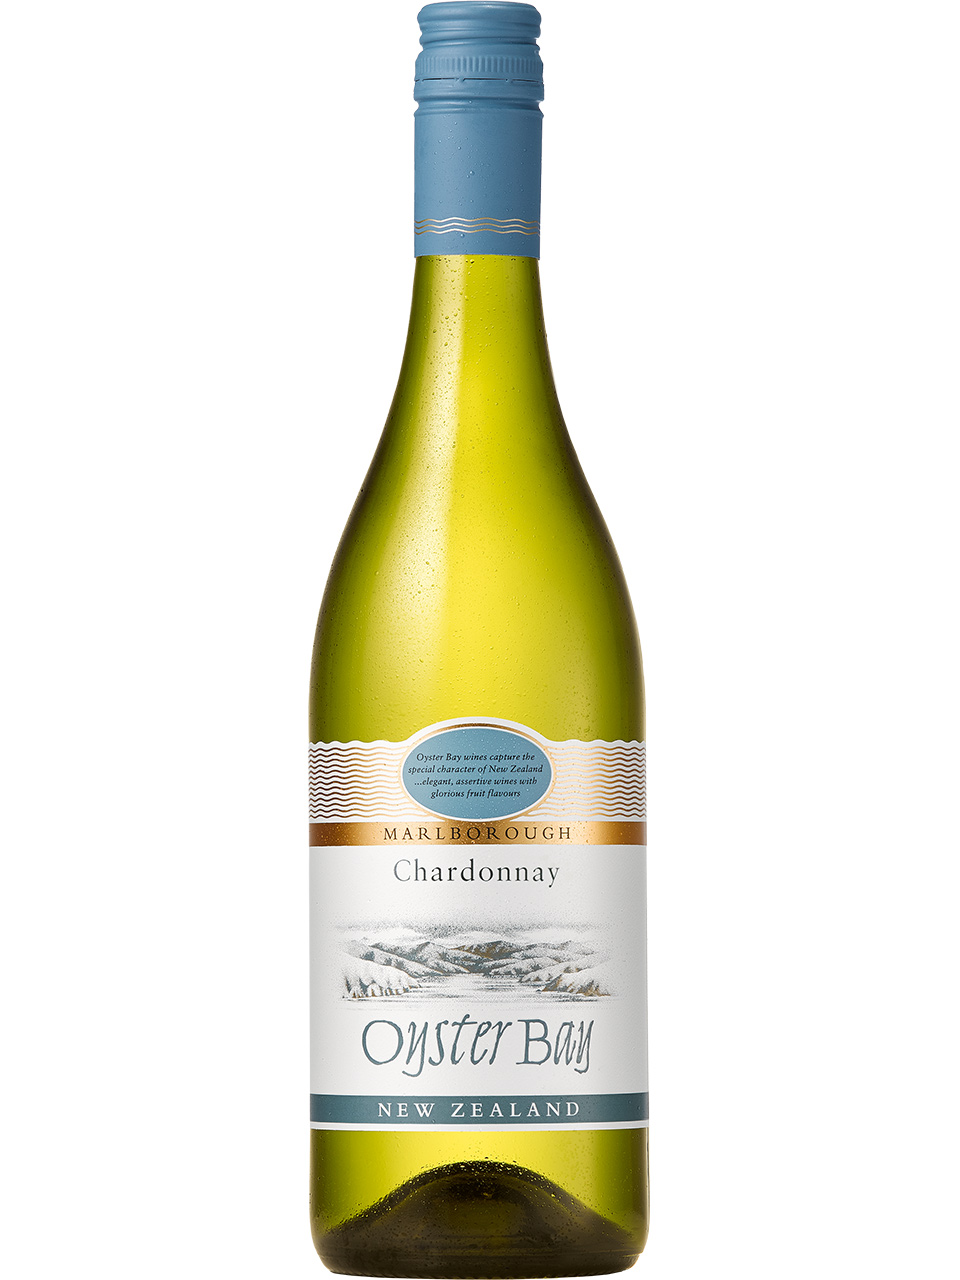 Oyster Bay Marlborough Chardonnay